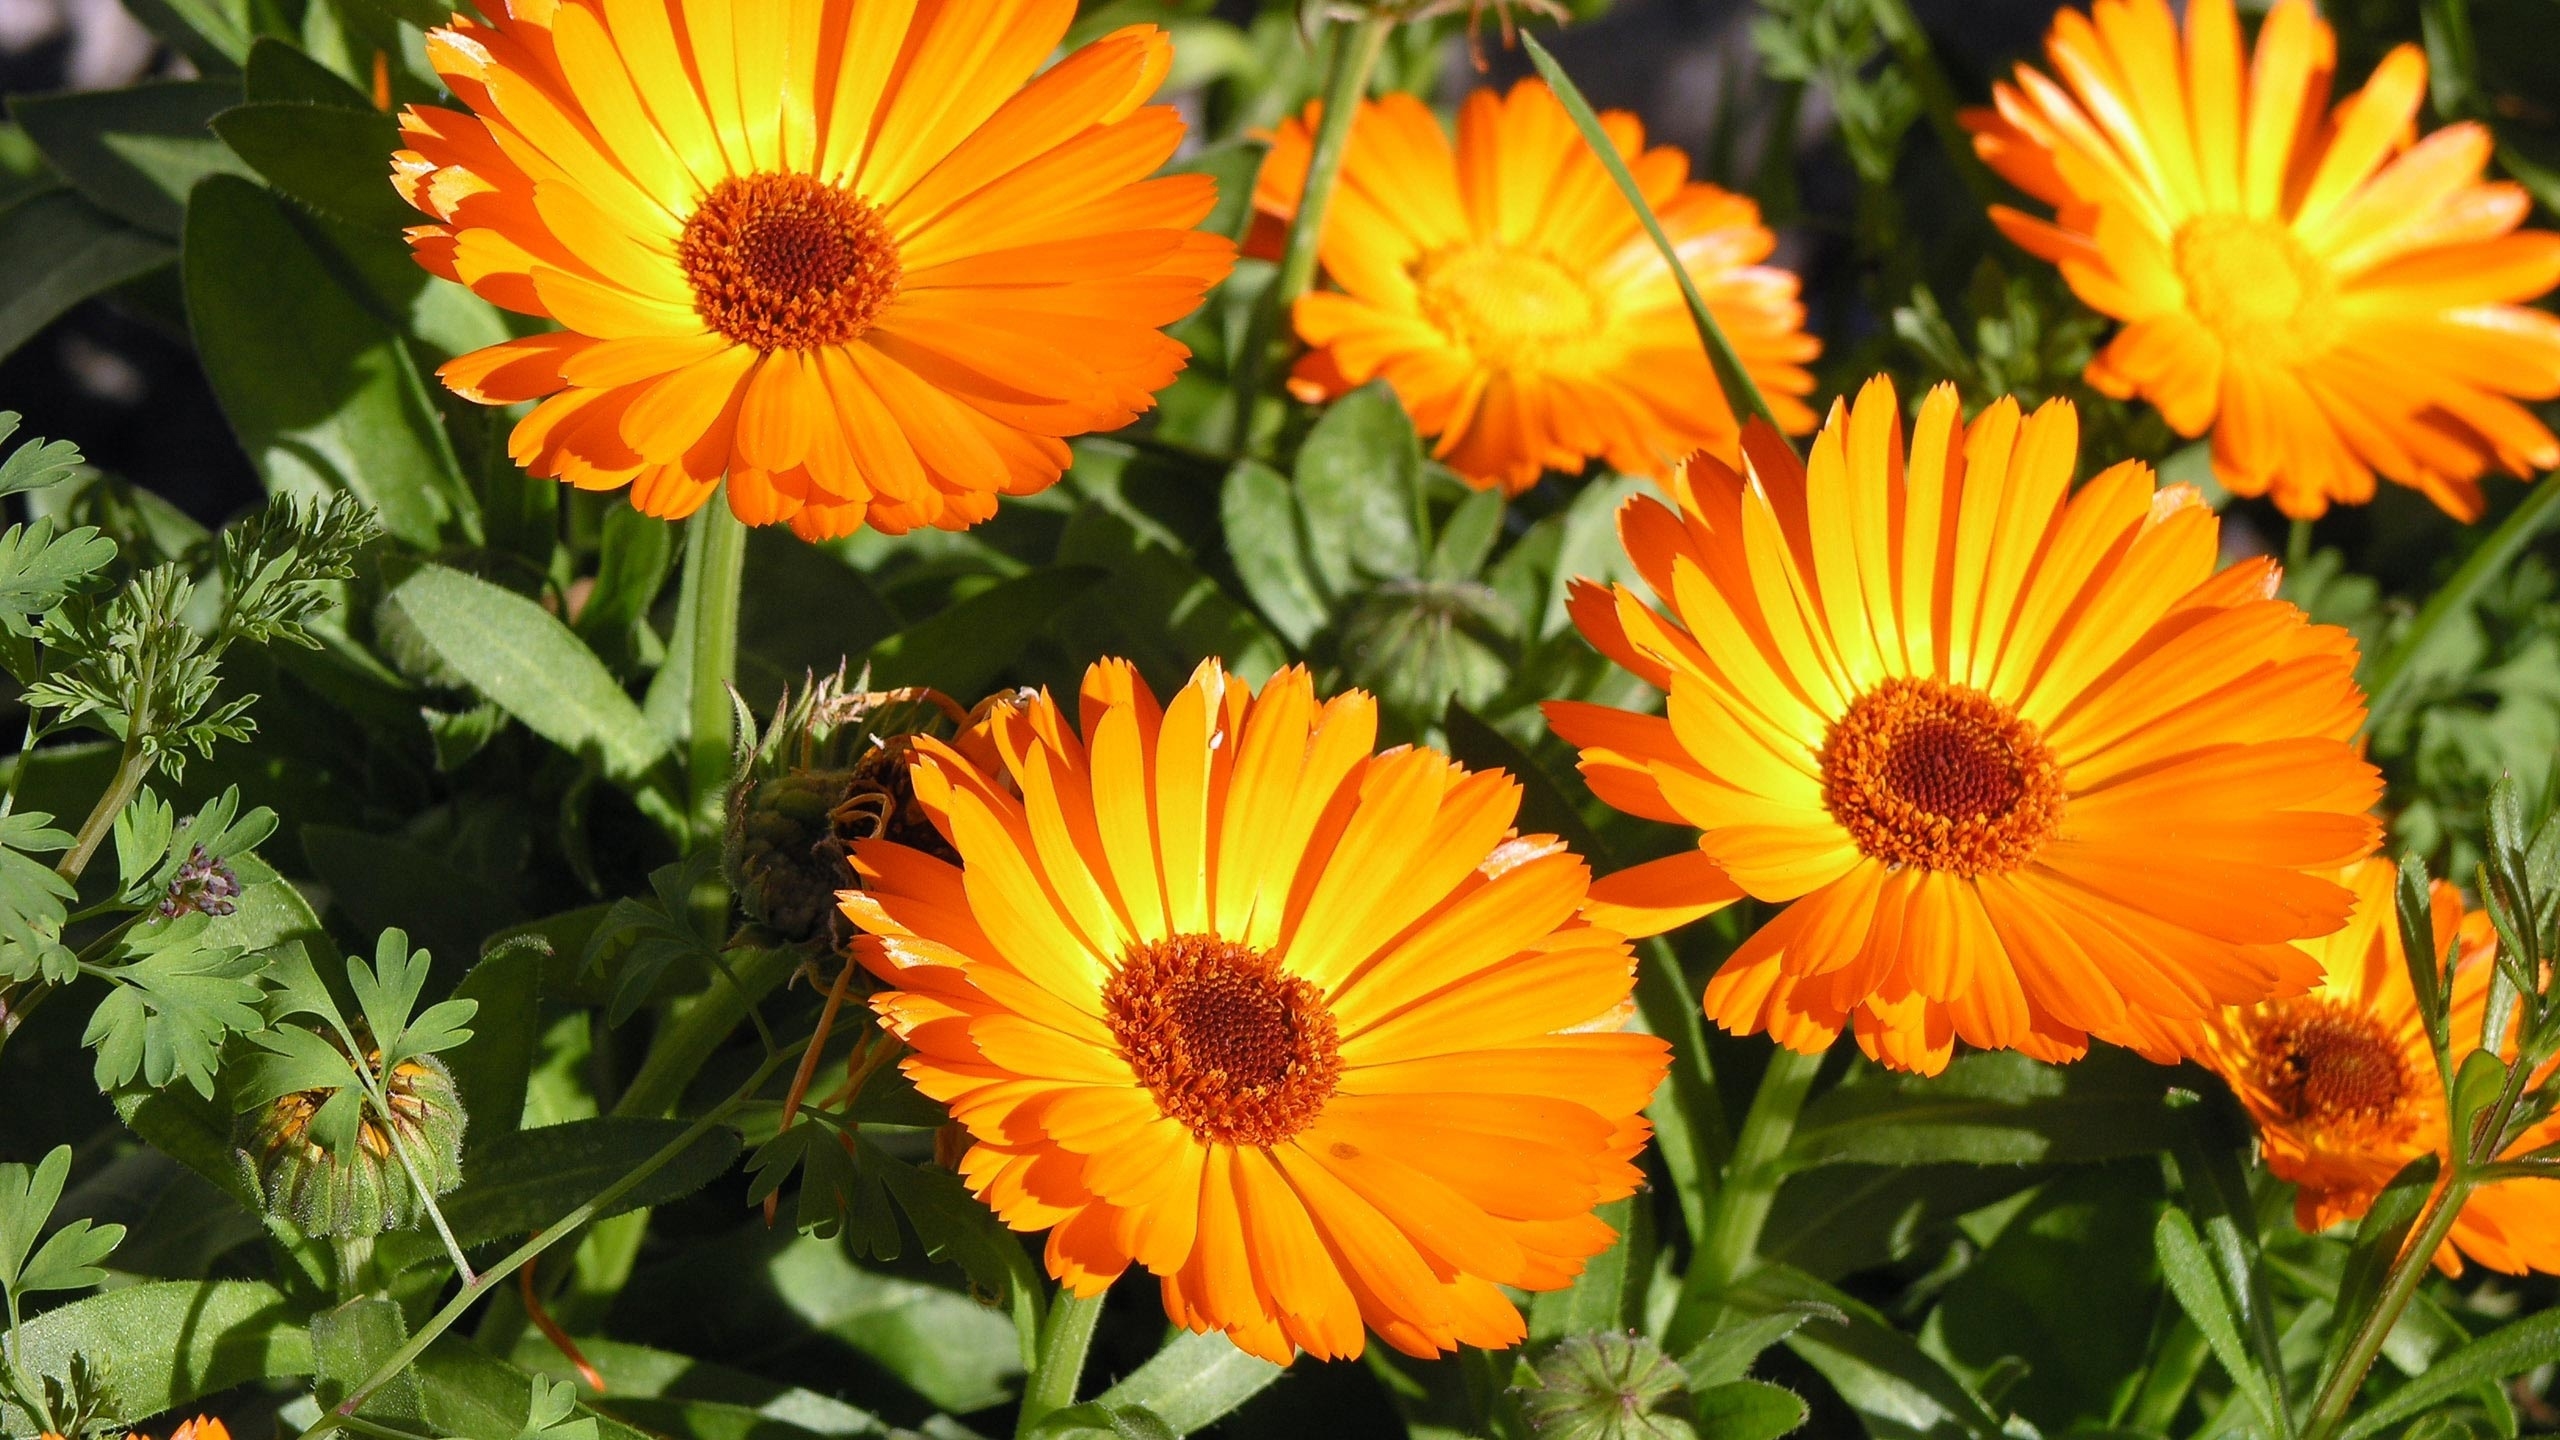 Sunbathing Flower for 2560x1440 HDTV resolution